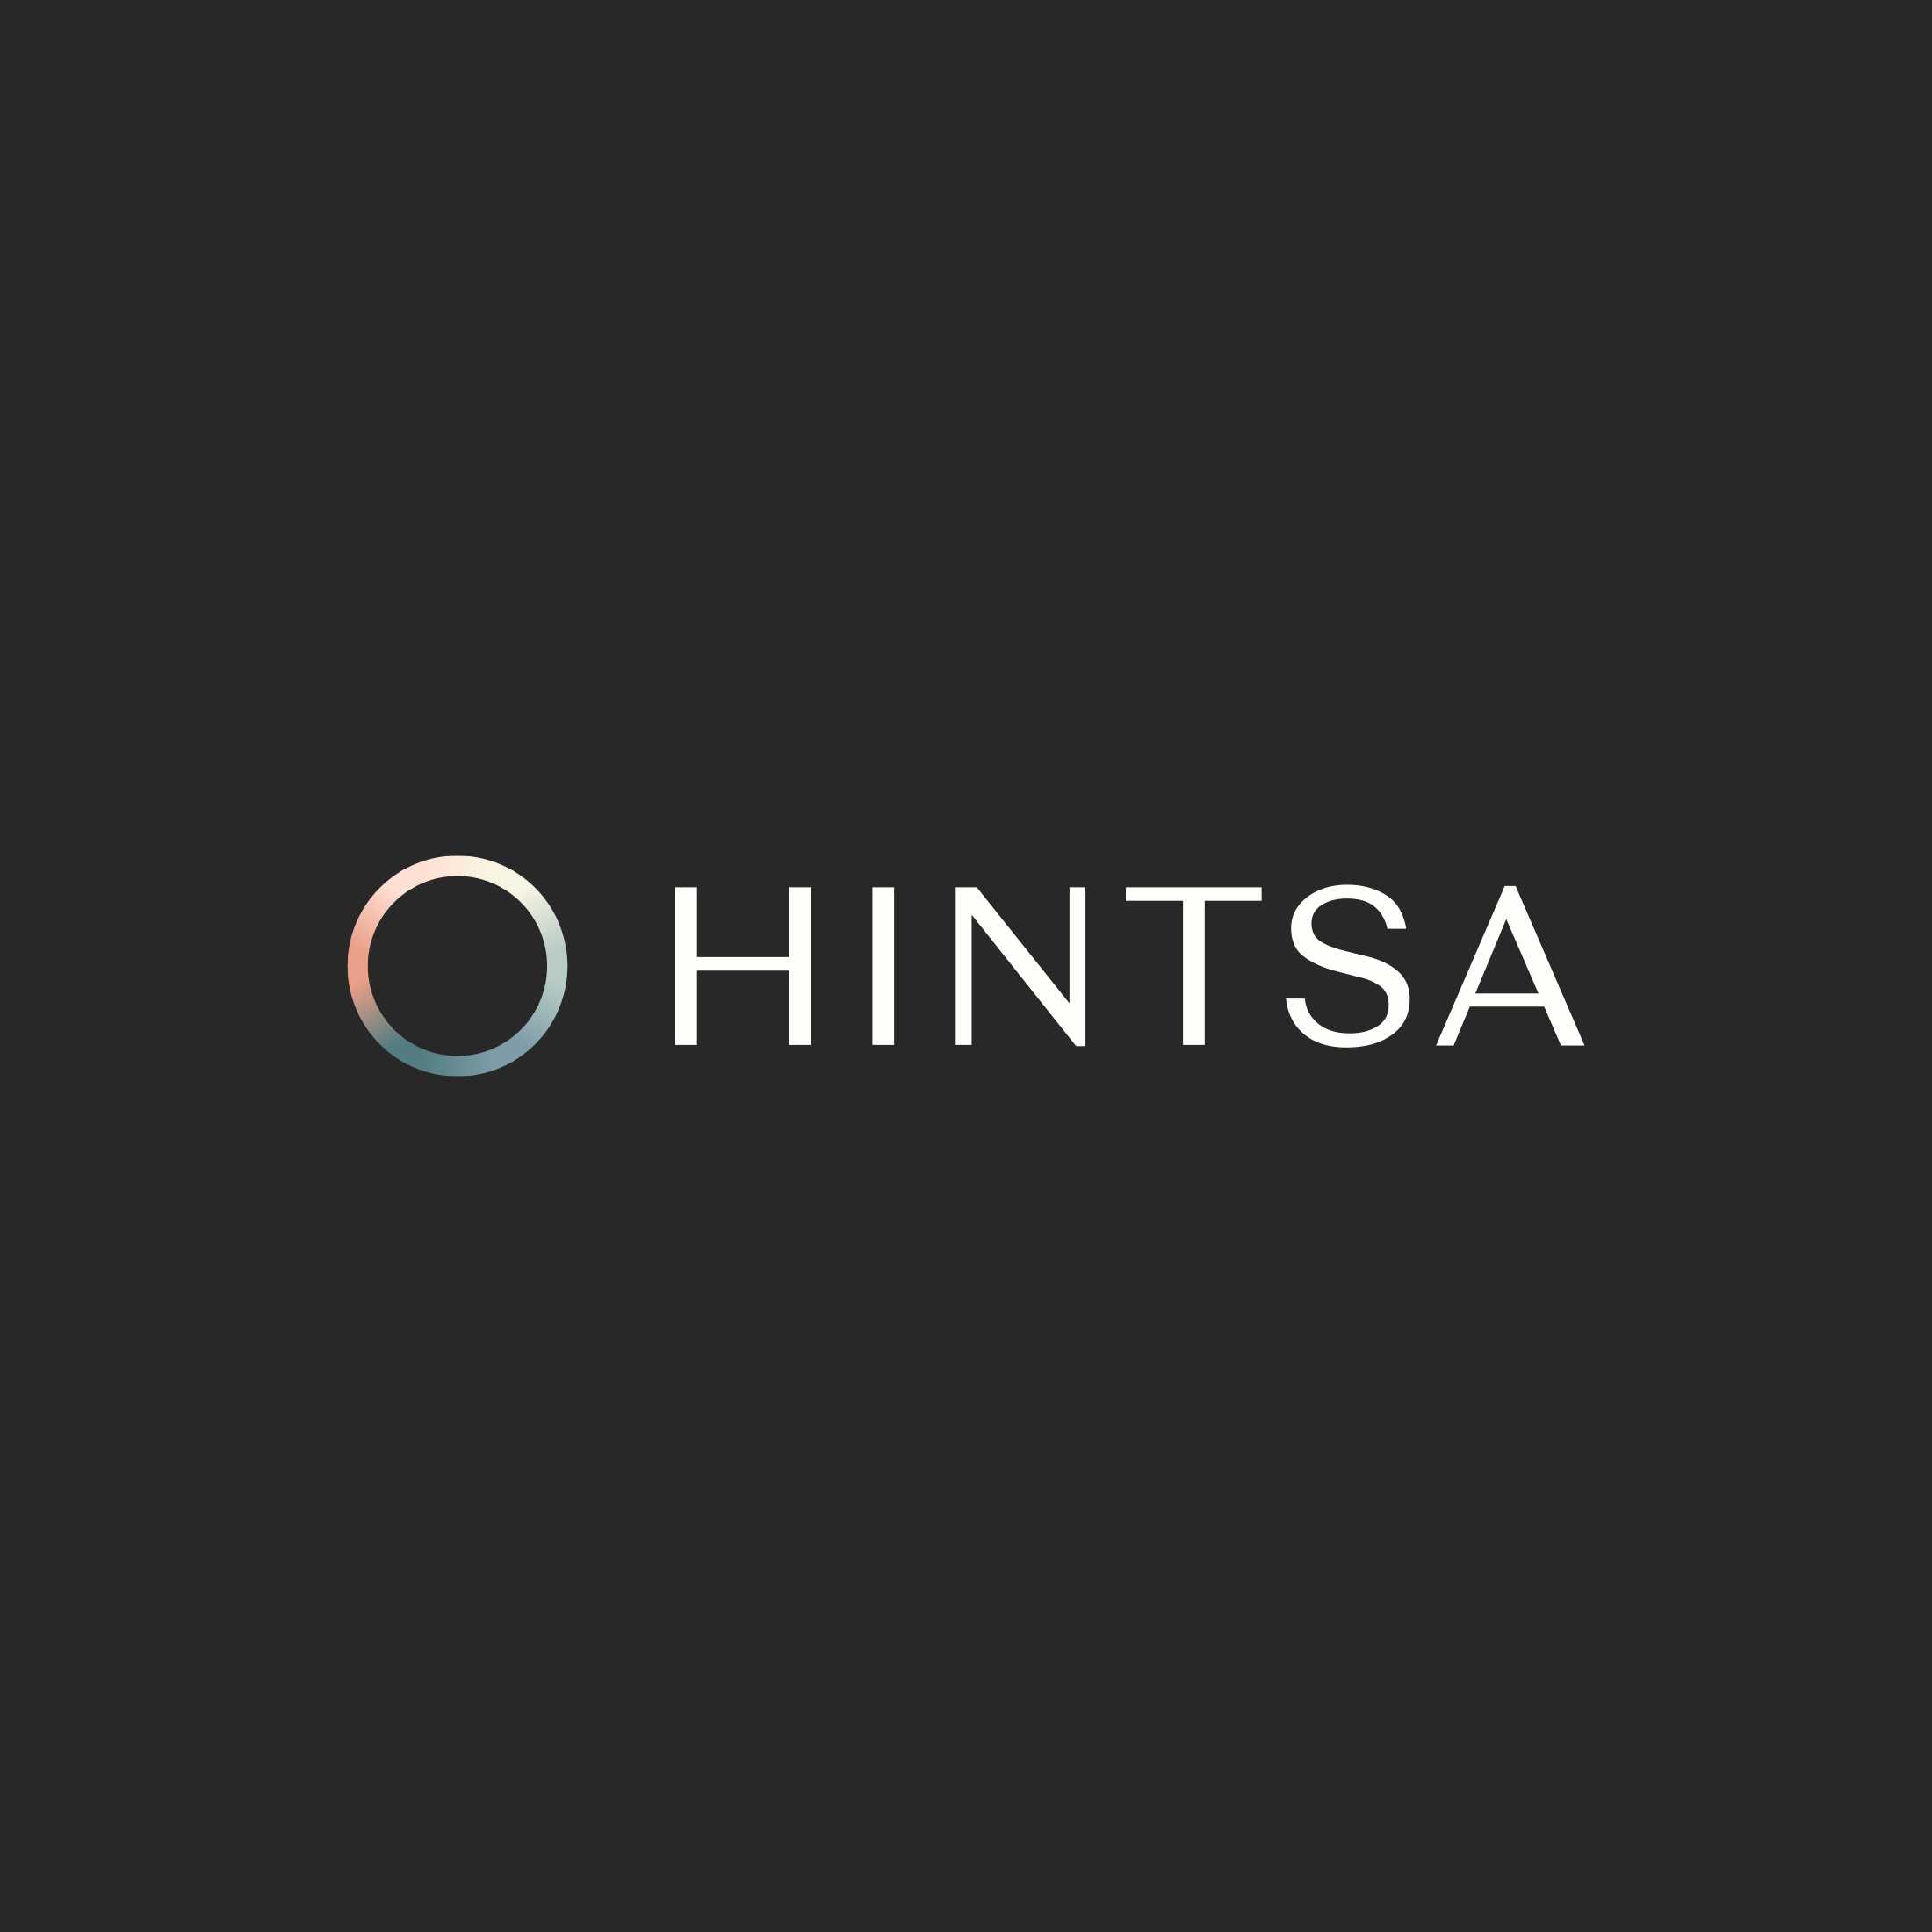 New Hintsa logo designed by Proxy